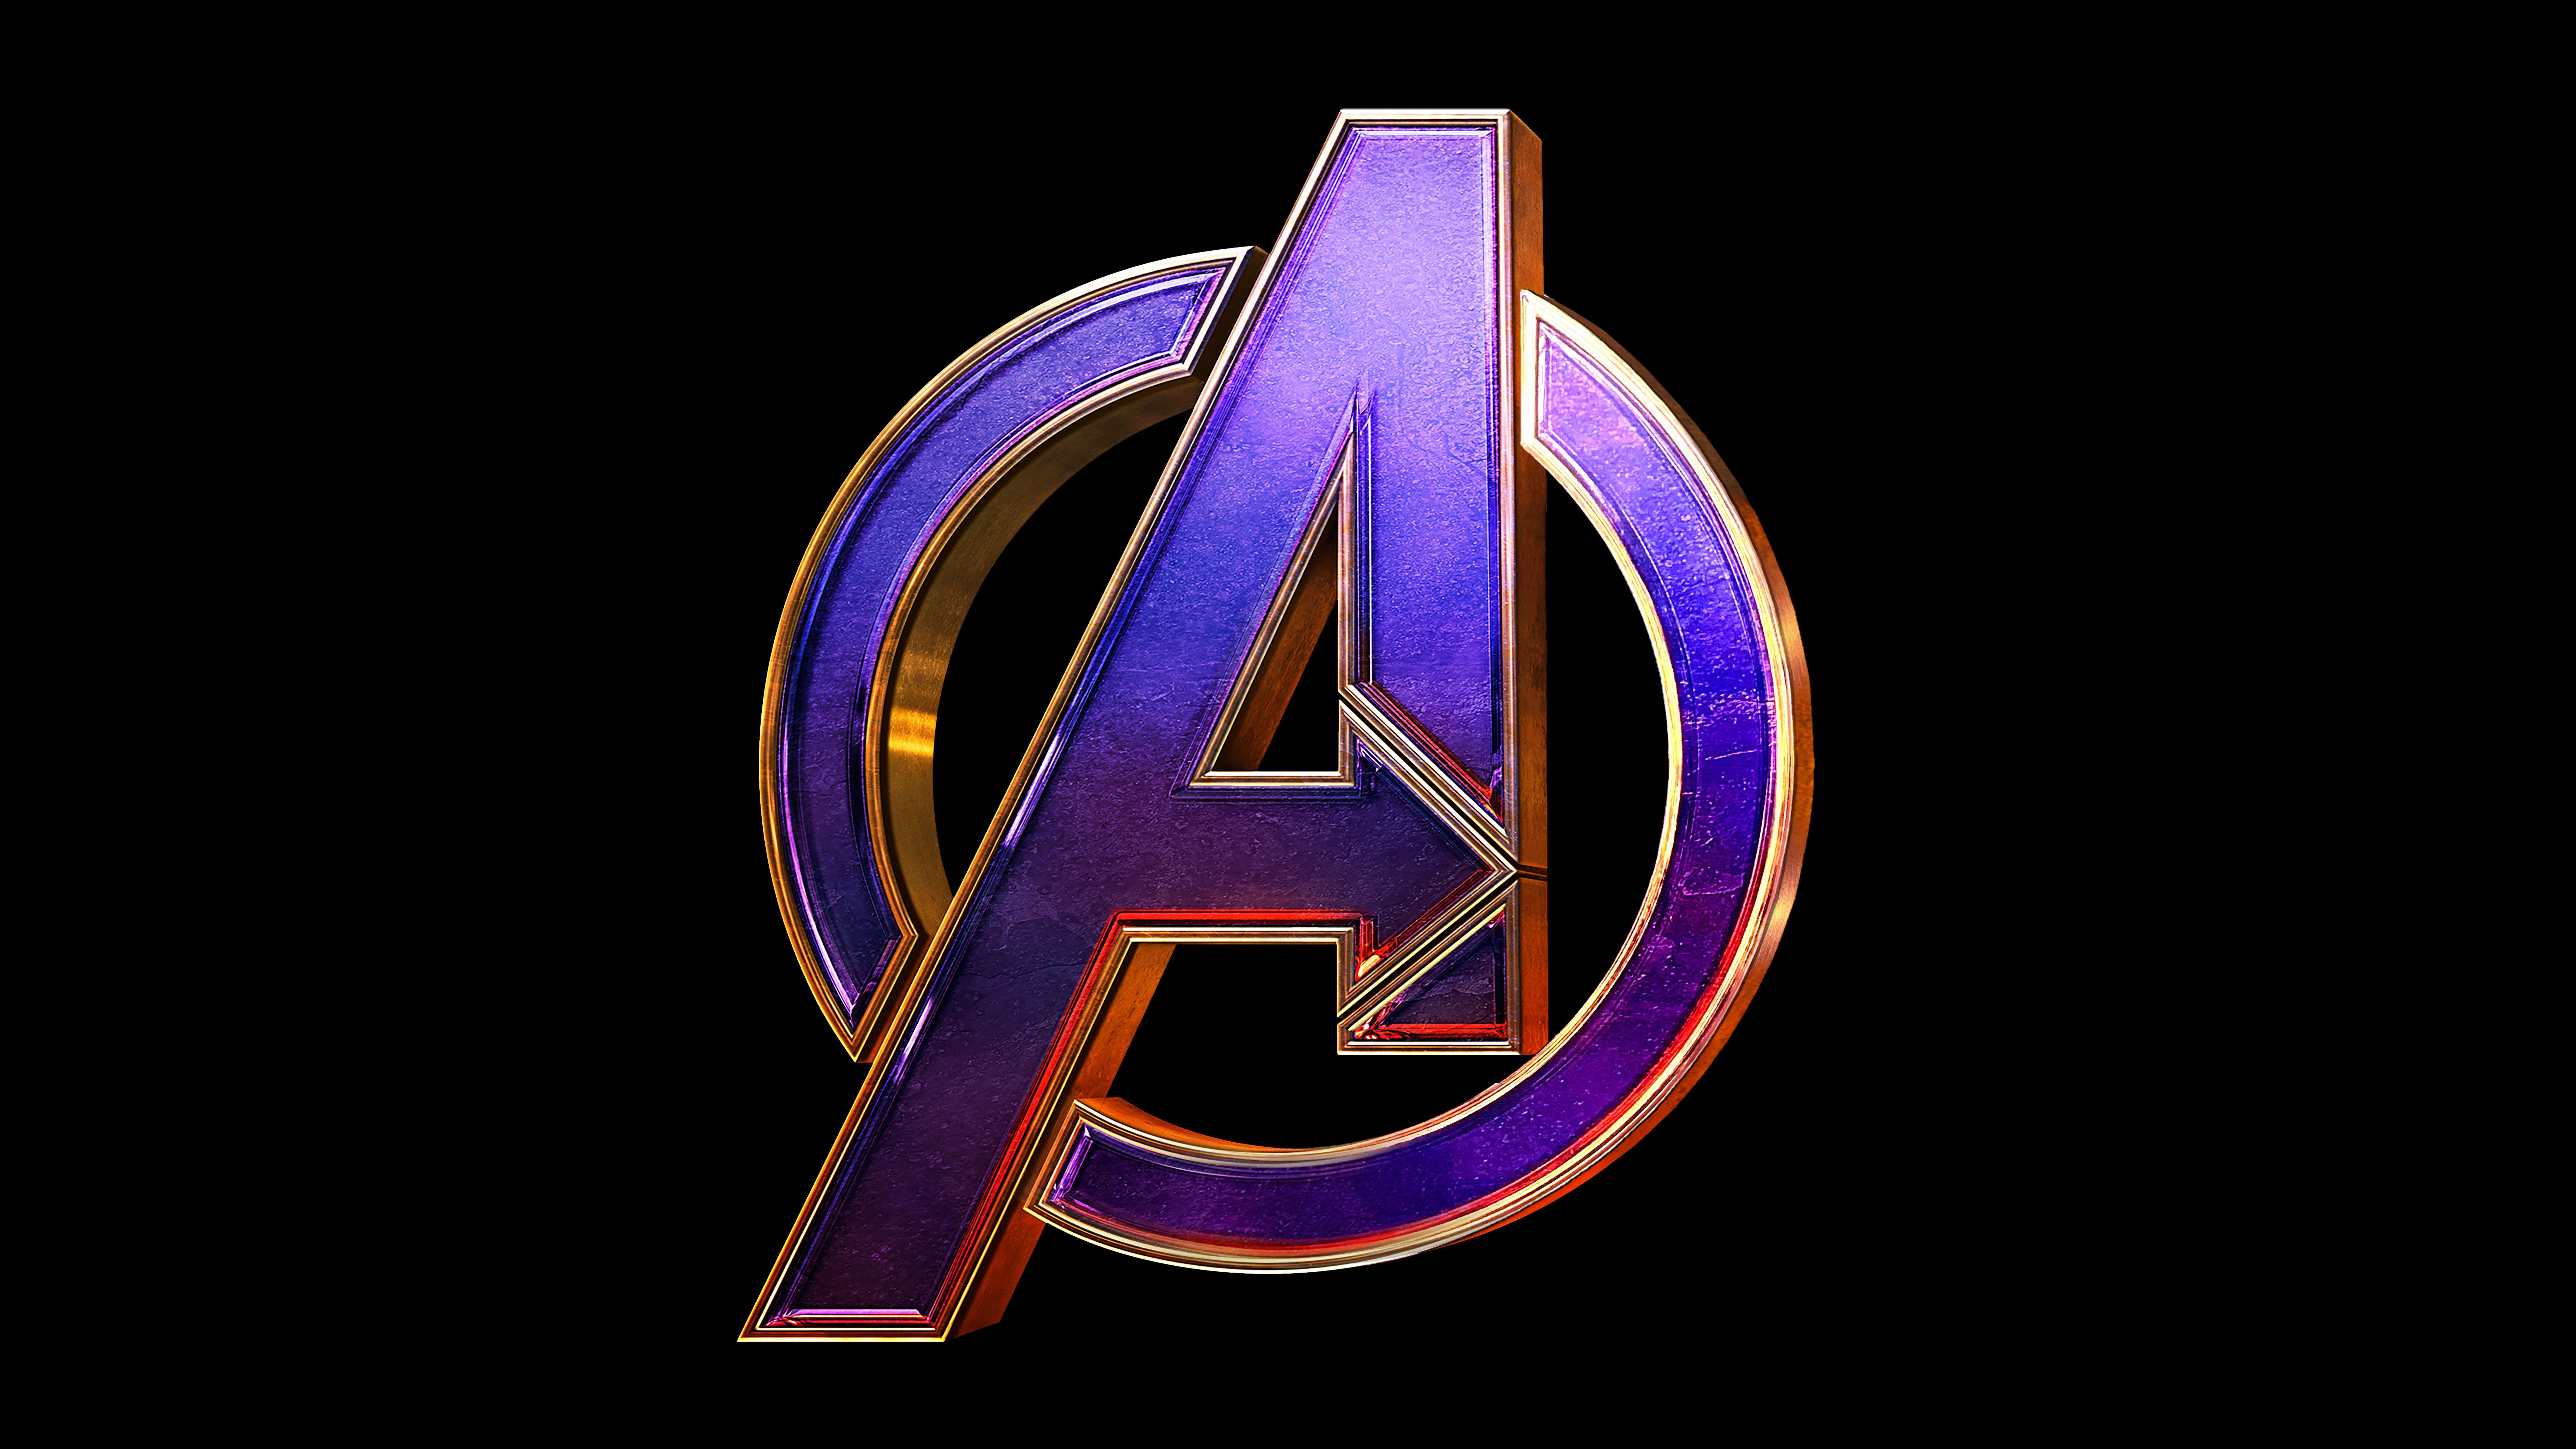 Avengers Endgame Logo Wallpaper Free Avengers Endgame Logo